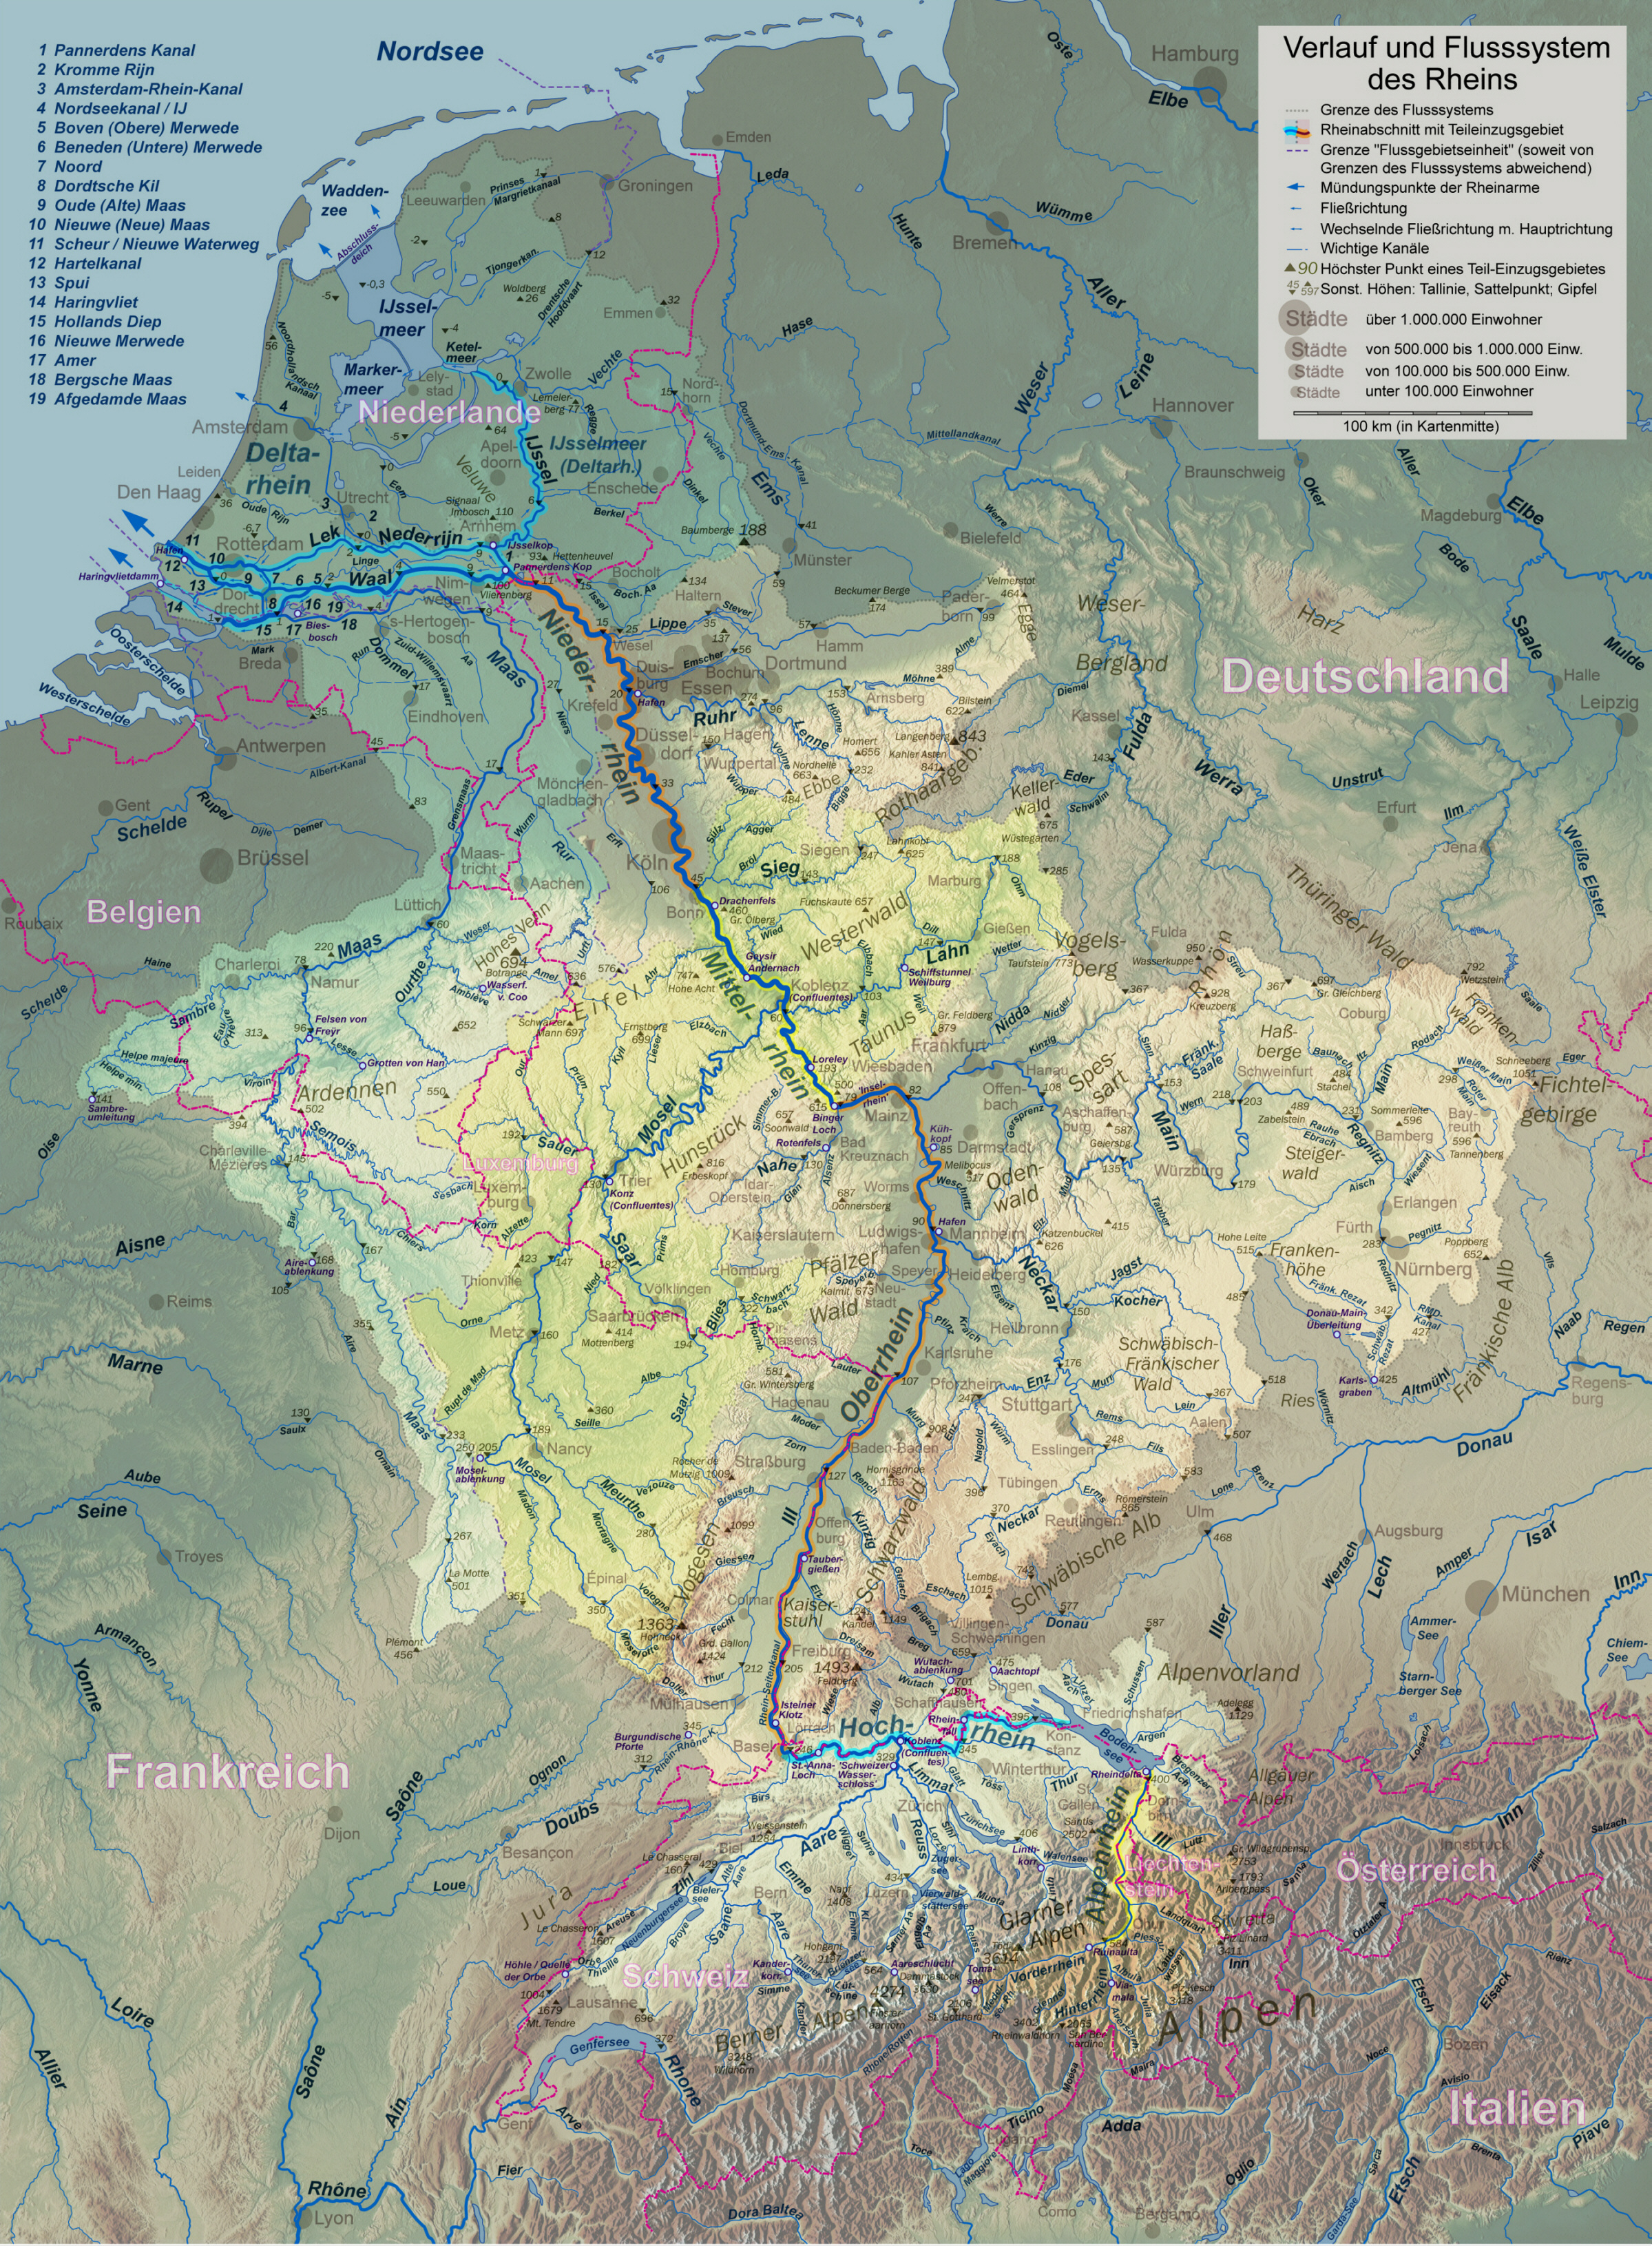 Flusssystemkarte Rhein